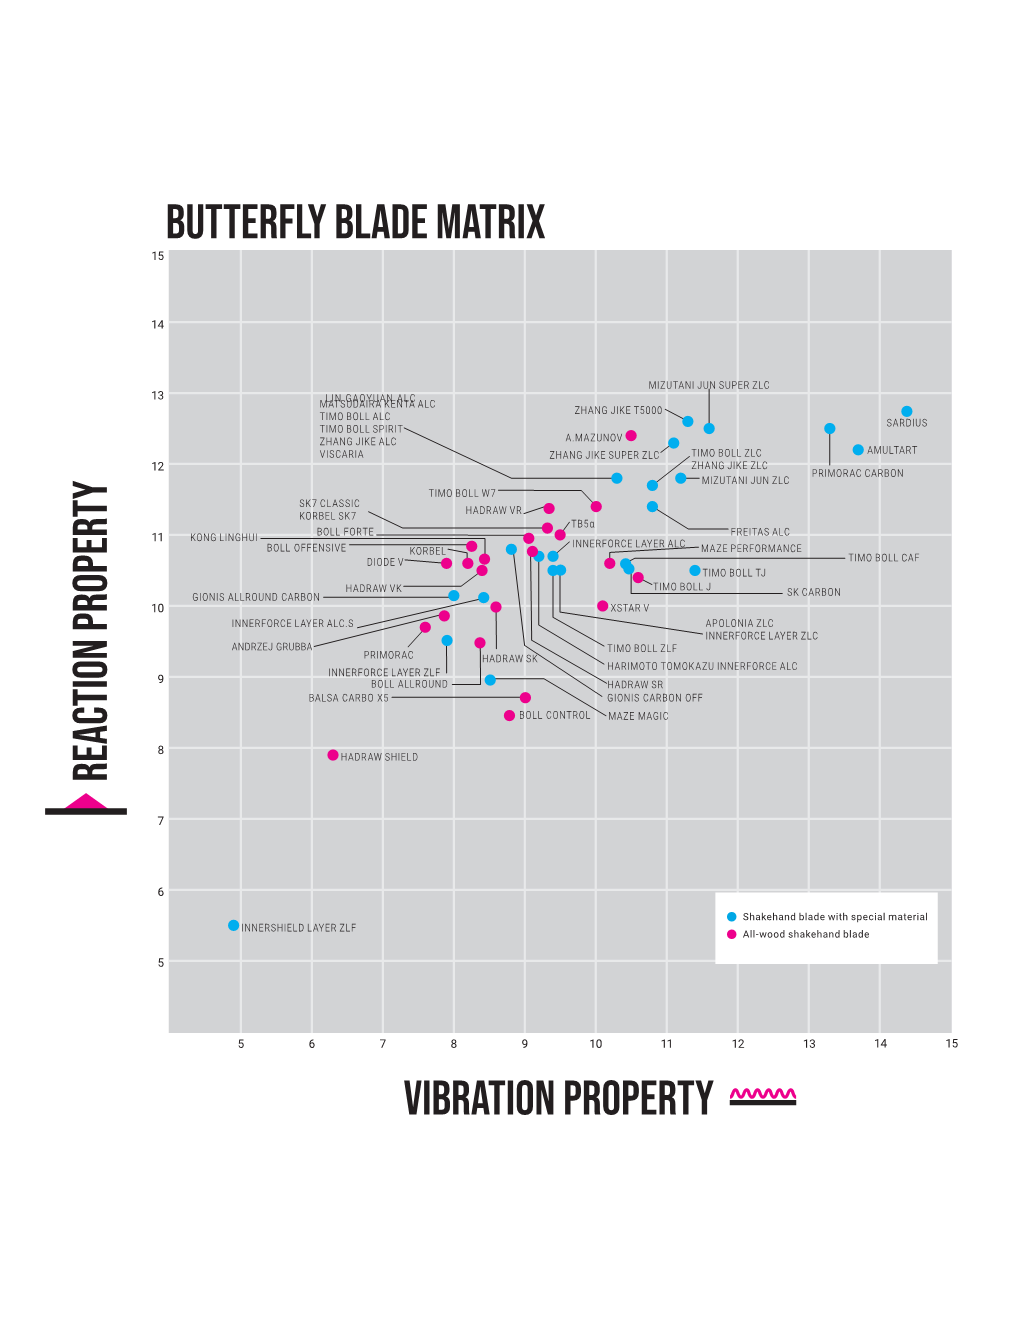 BUTTERFLY Blade Matrix Vibration Property Reaction Property